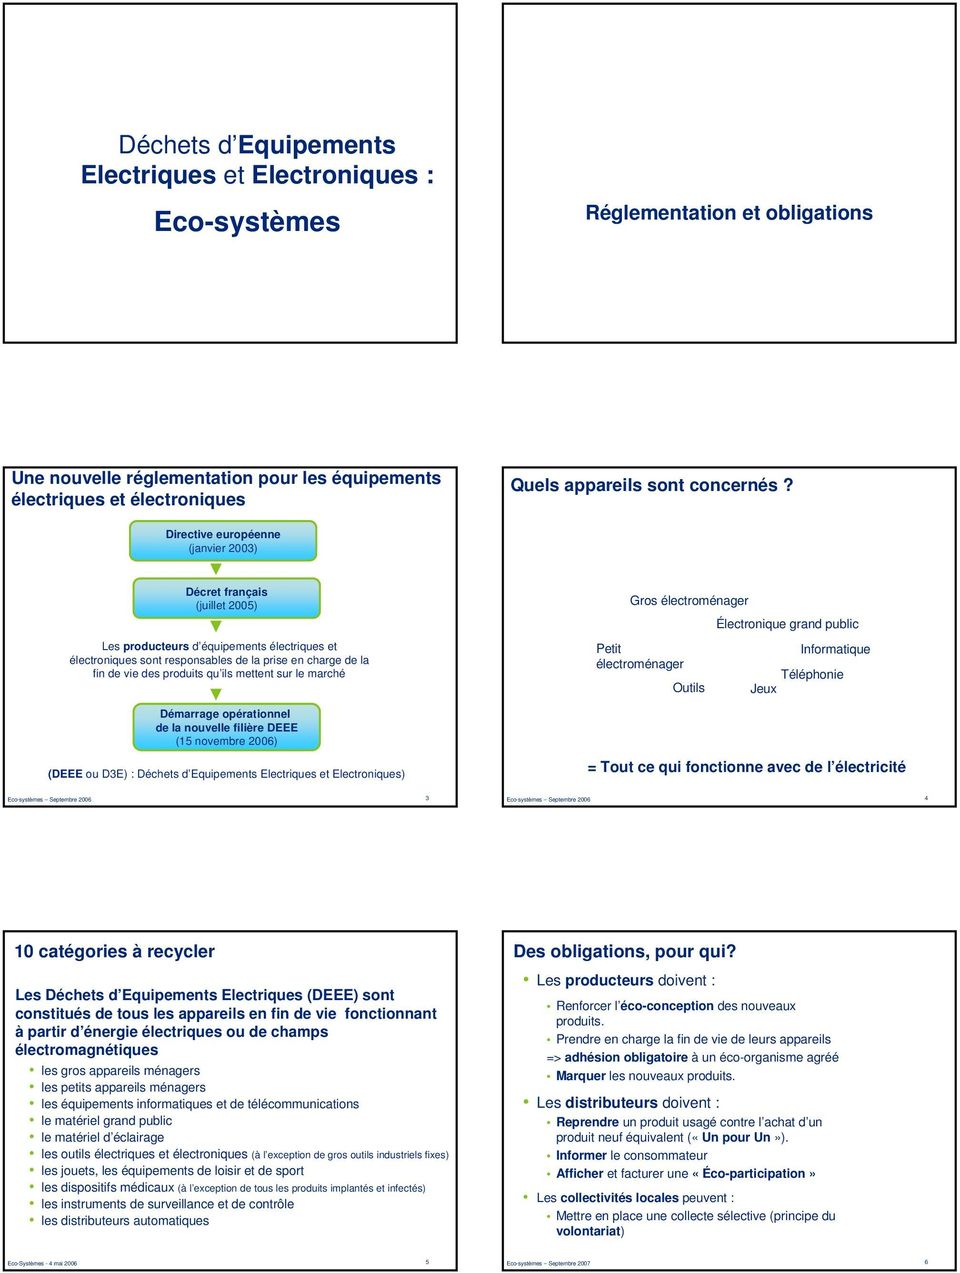 Directive européenne (janvier 2003) Décret français (juillet 2005) Les producteurs d équipements électriques et électroniques sont responsables de la prise en charge de la fin de vie des produits qu